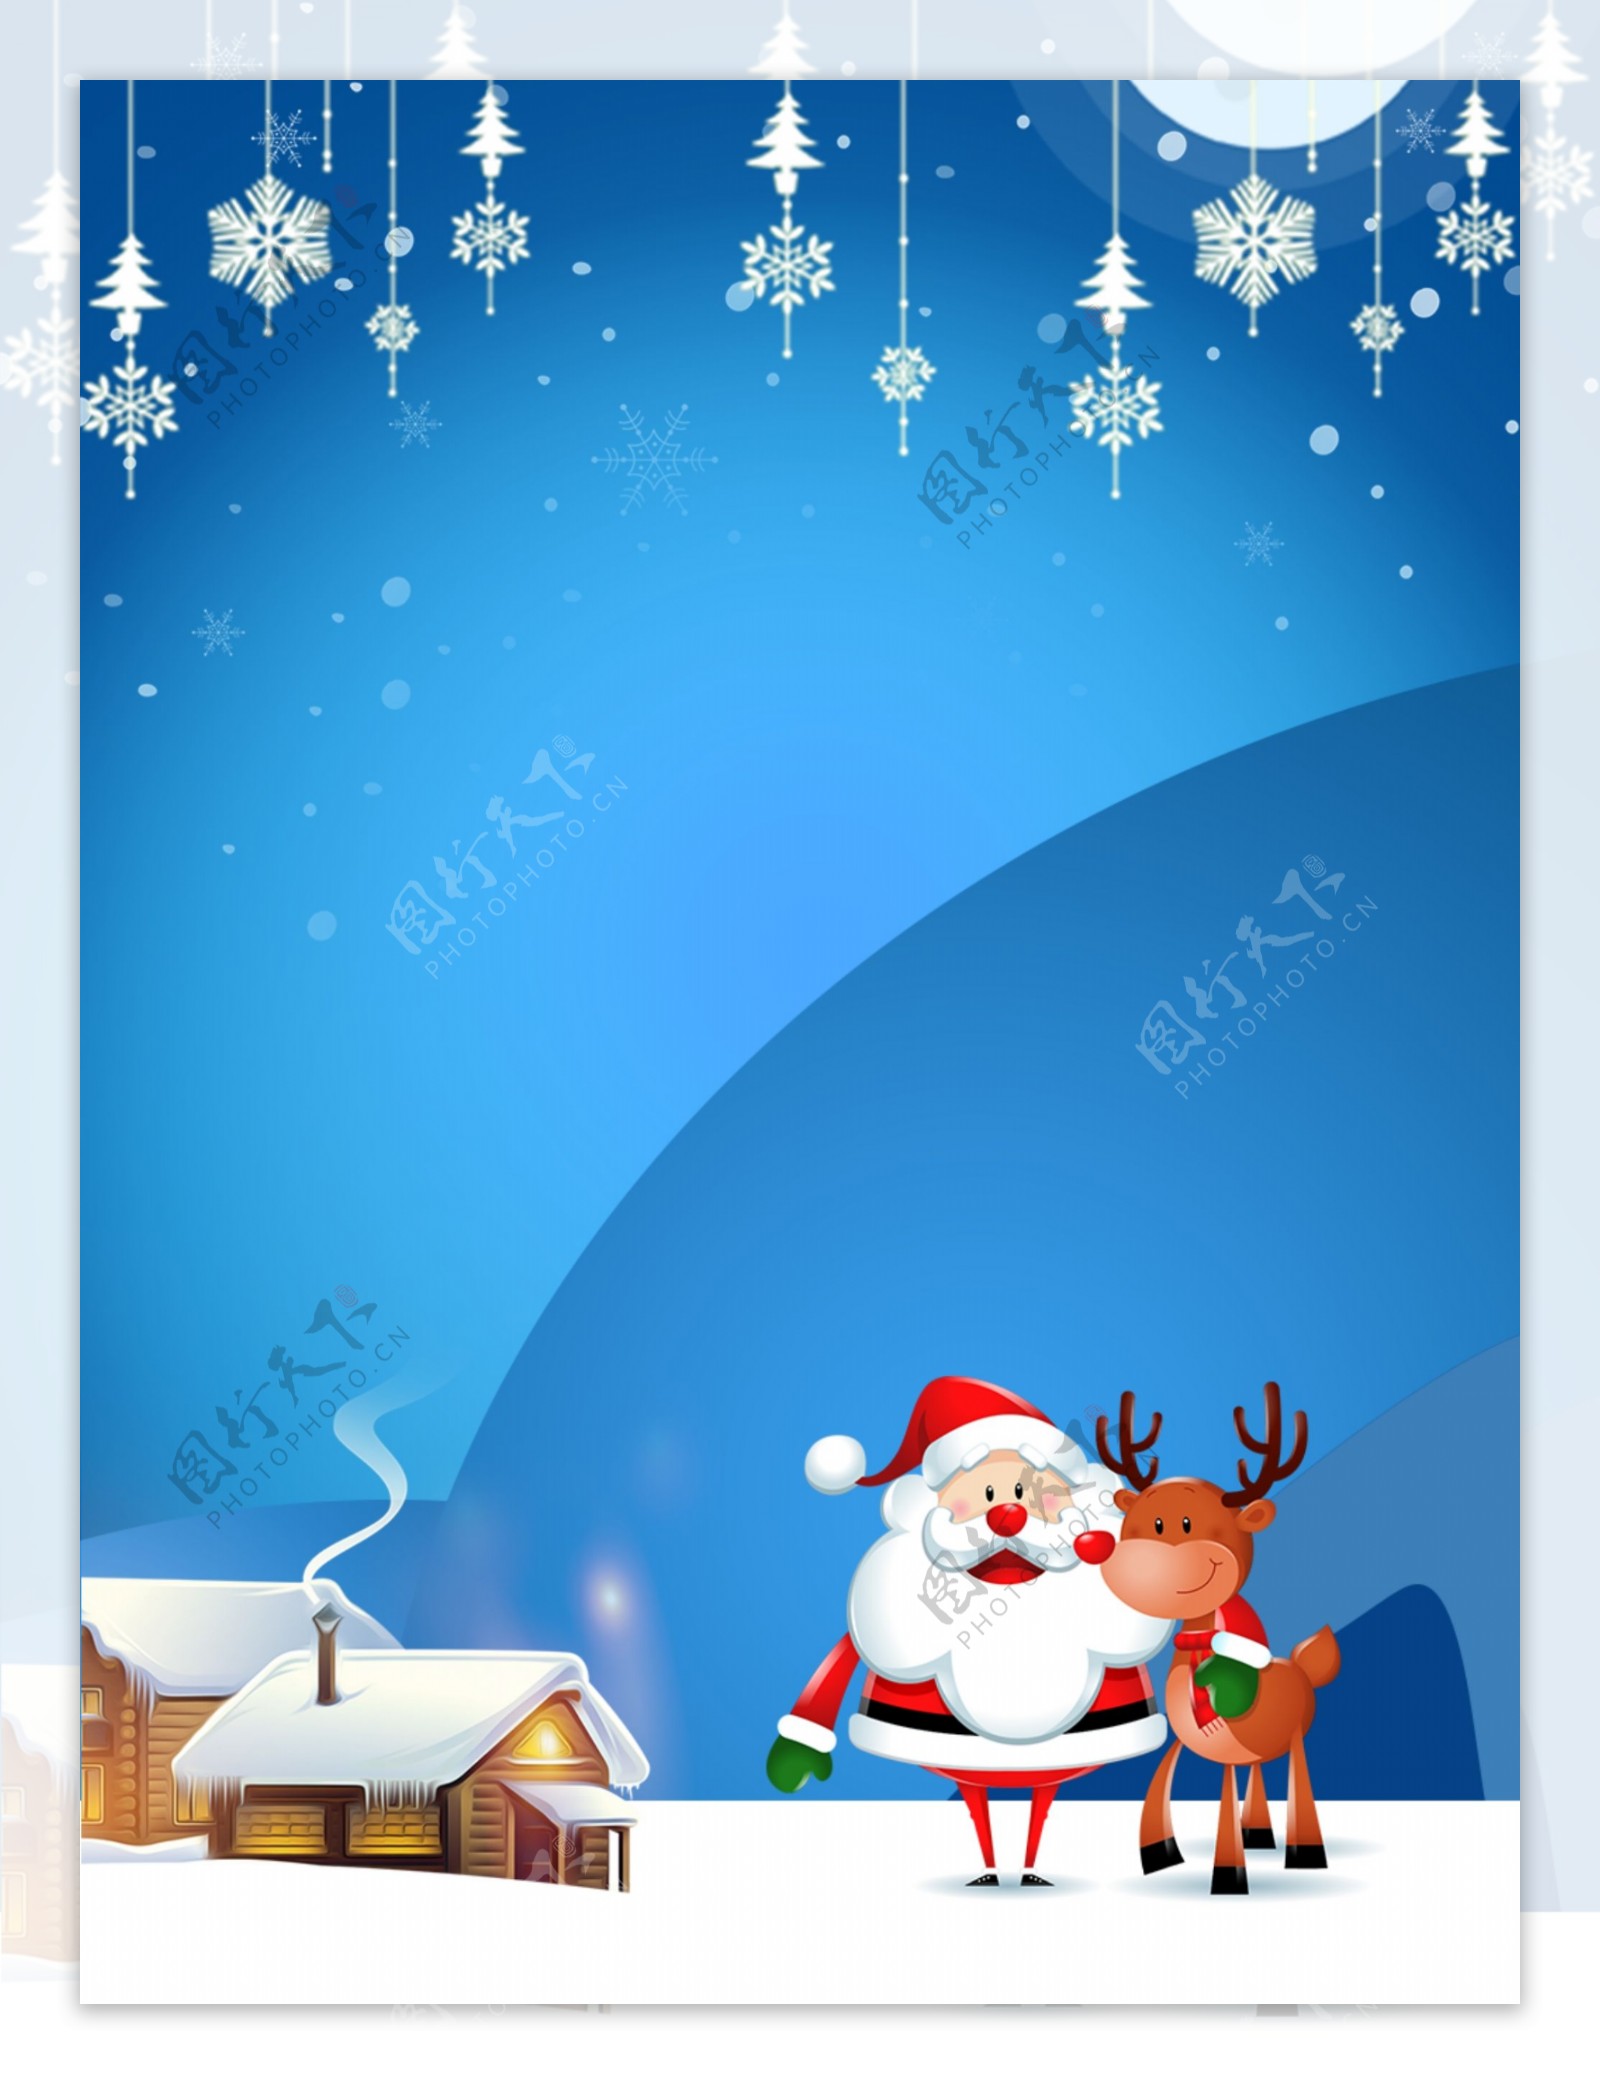 圣诞节背景蓝色圣诞节雪花麋鹿小房子